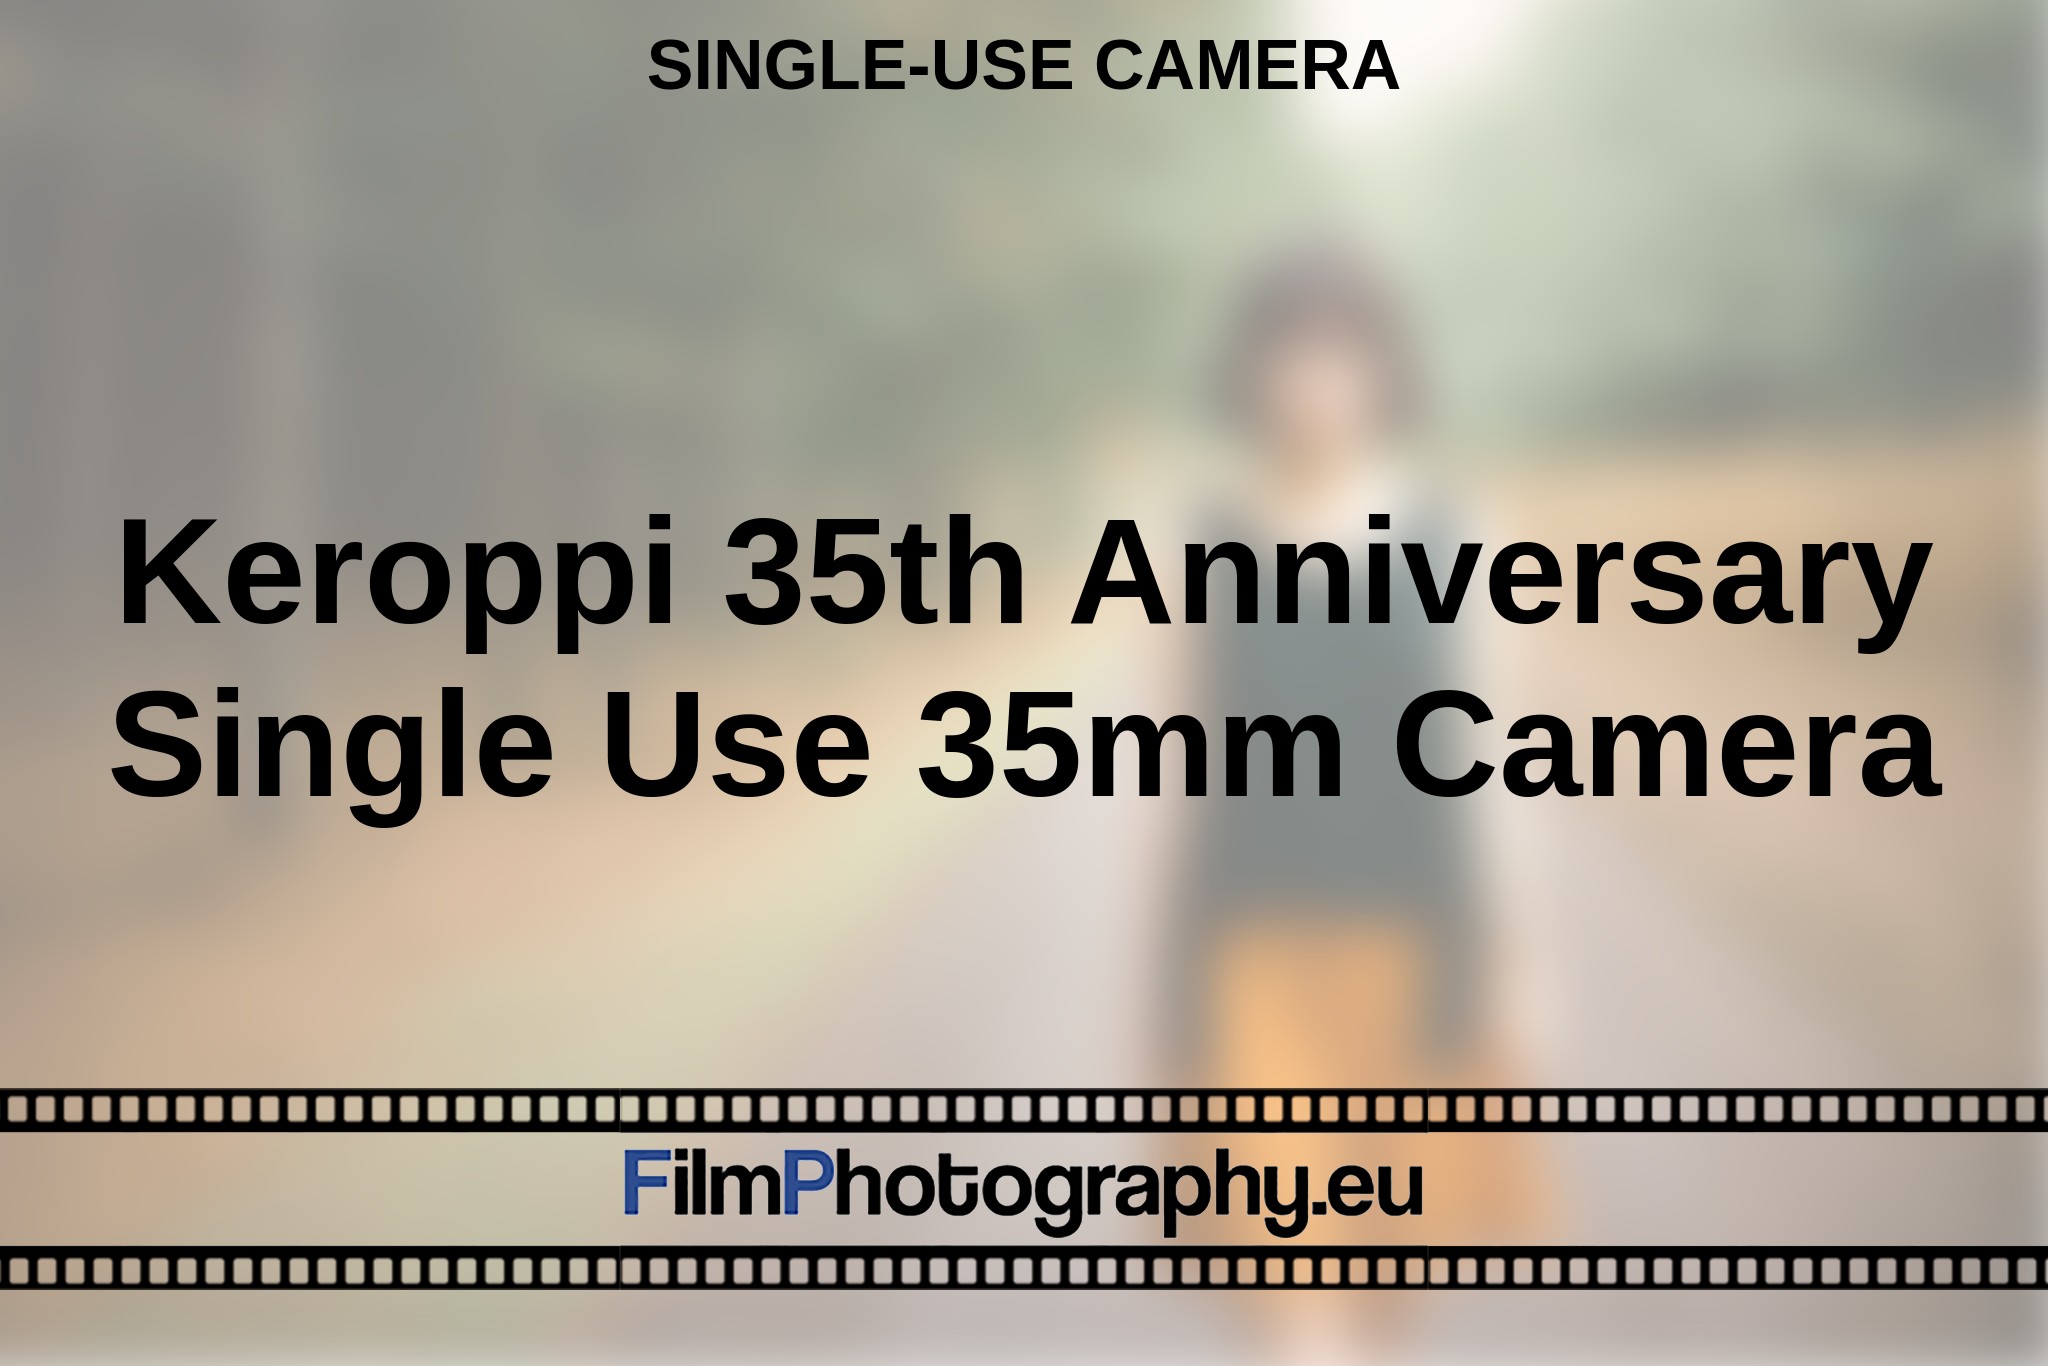 keroppi-35th-anniversary-single-use-35mm-camera-single-use-camera-en-bnv.jpg